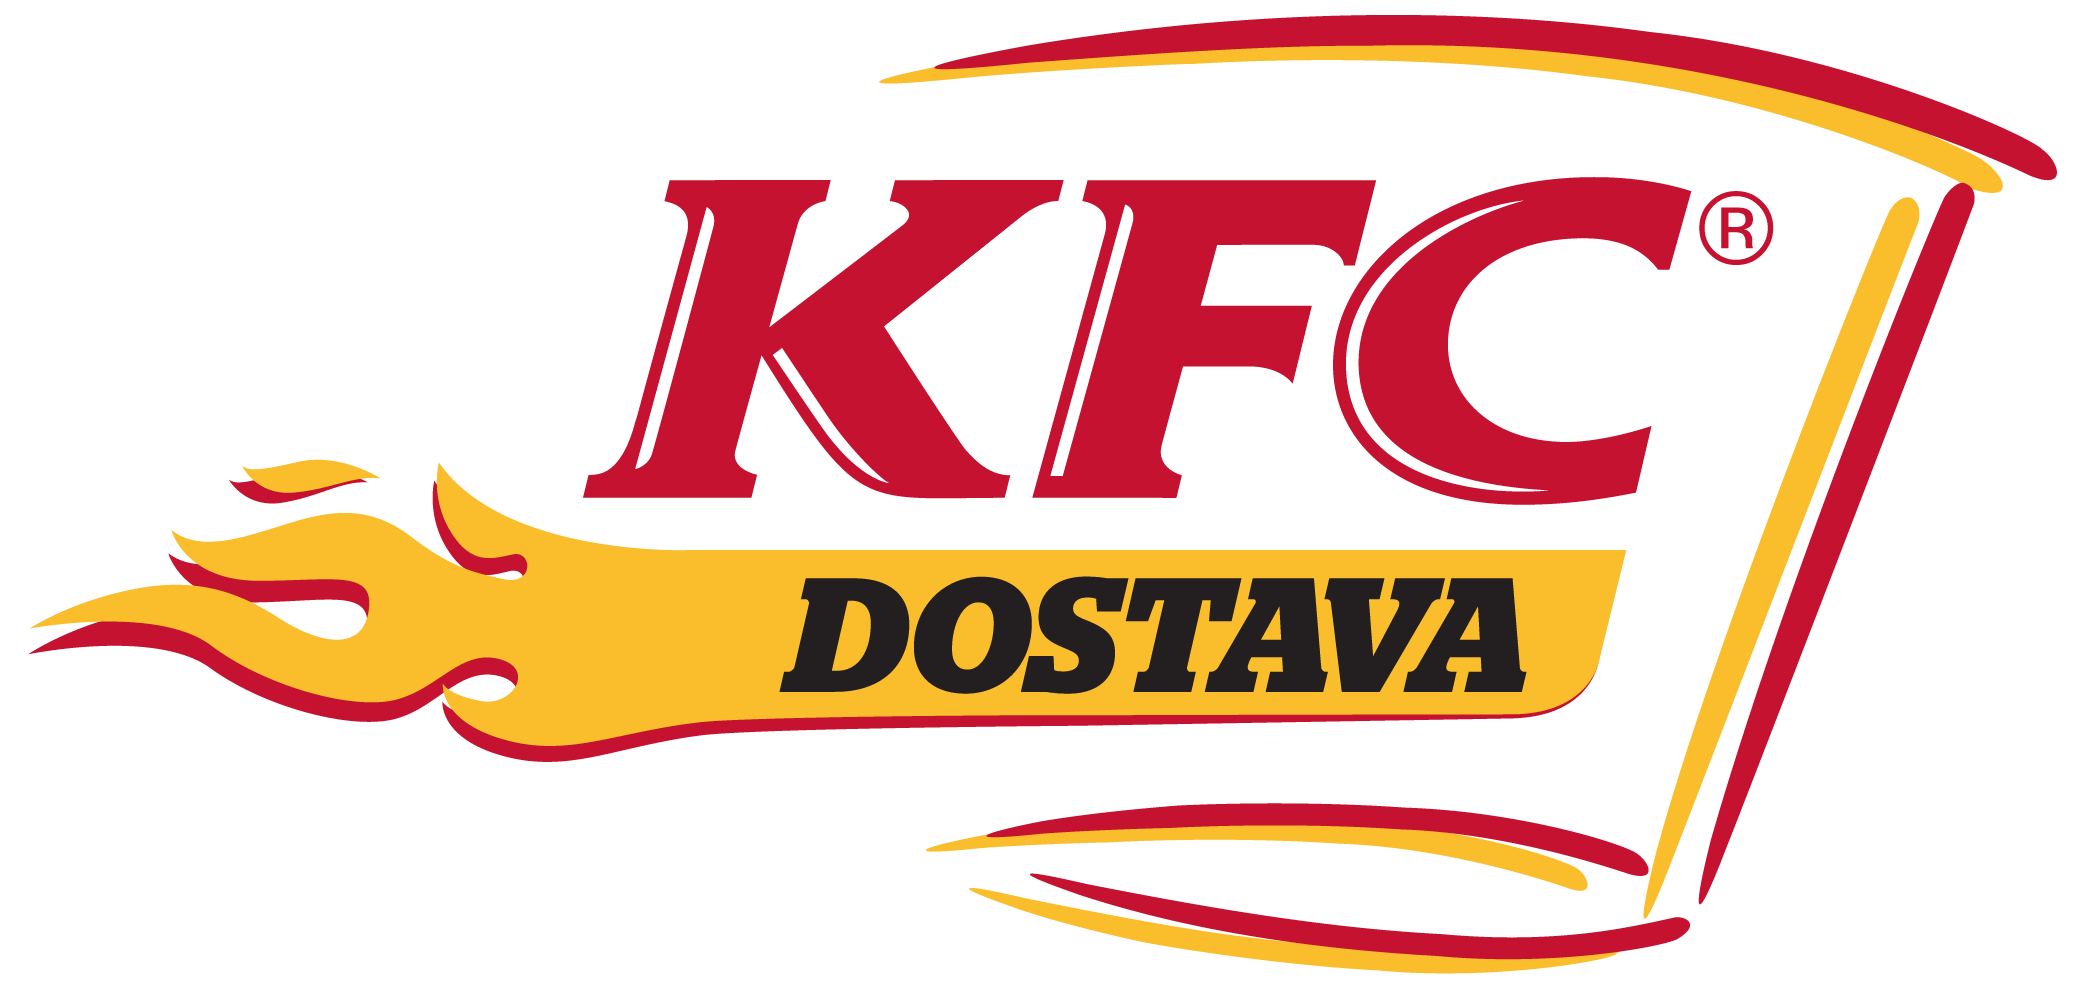 KFC Logo